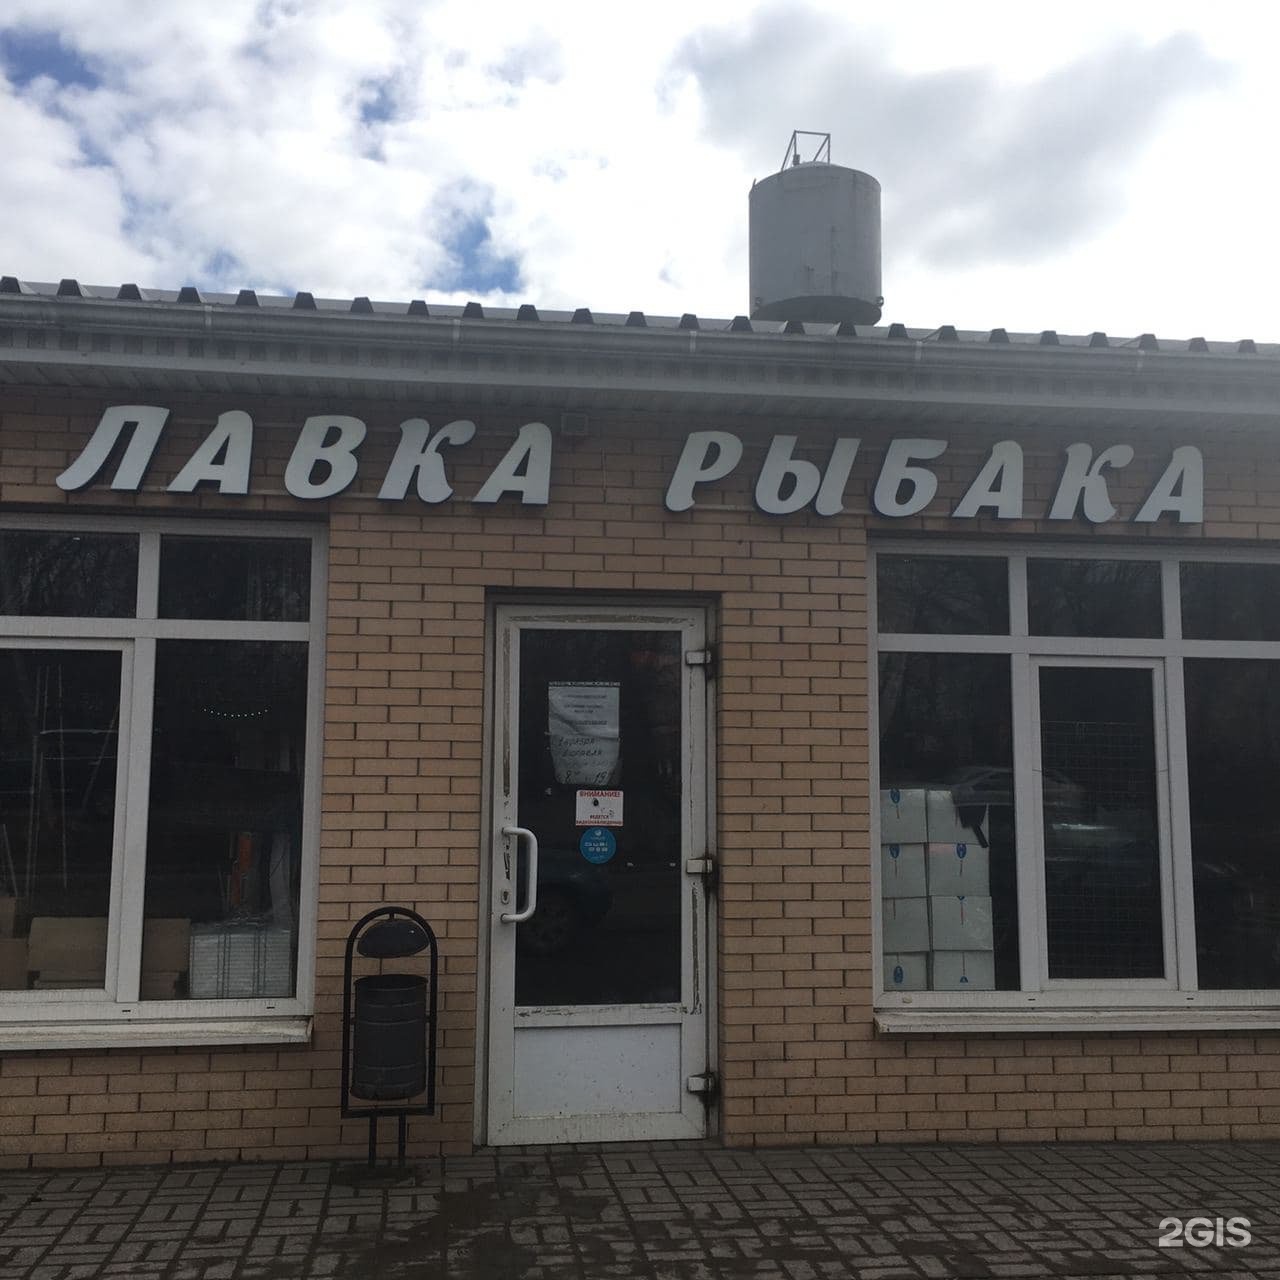 Магазин Лавка Рыбака На Большевиков